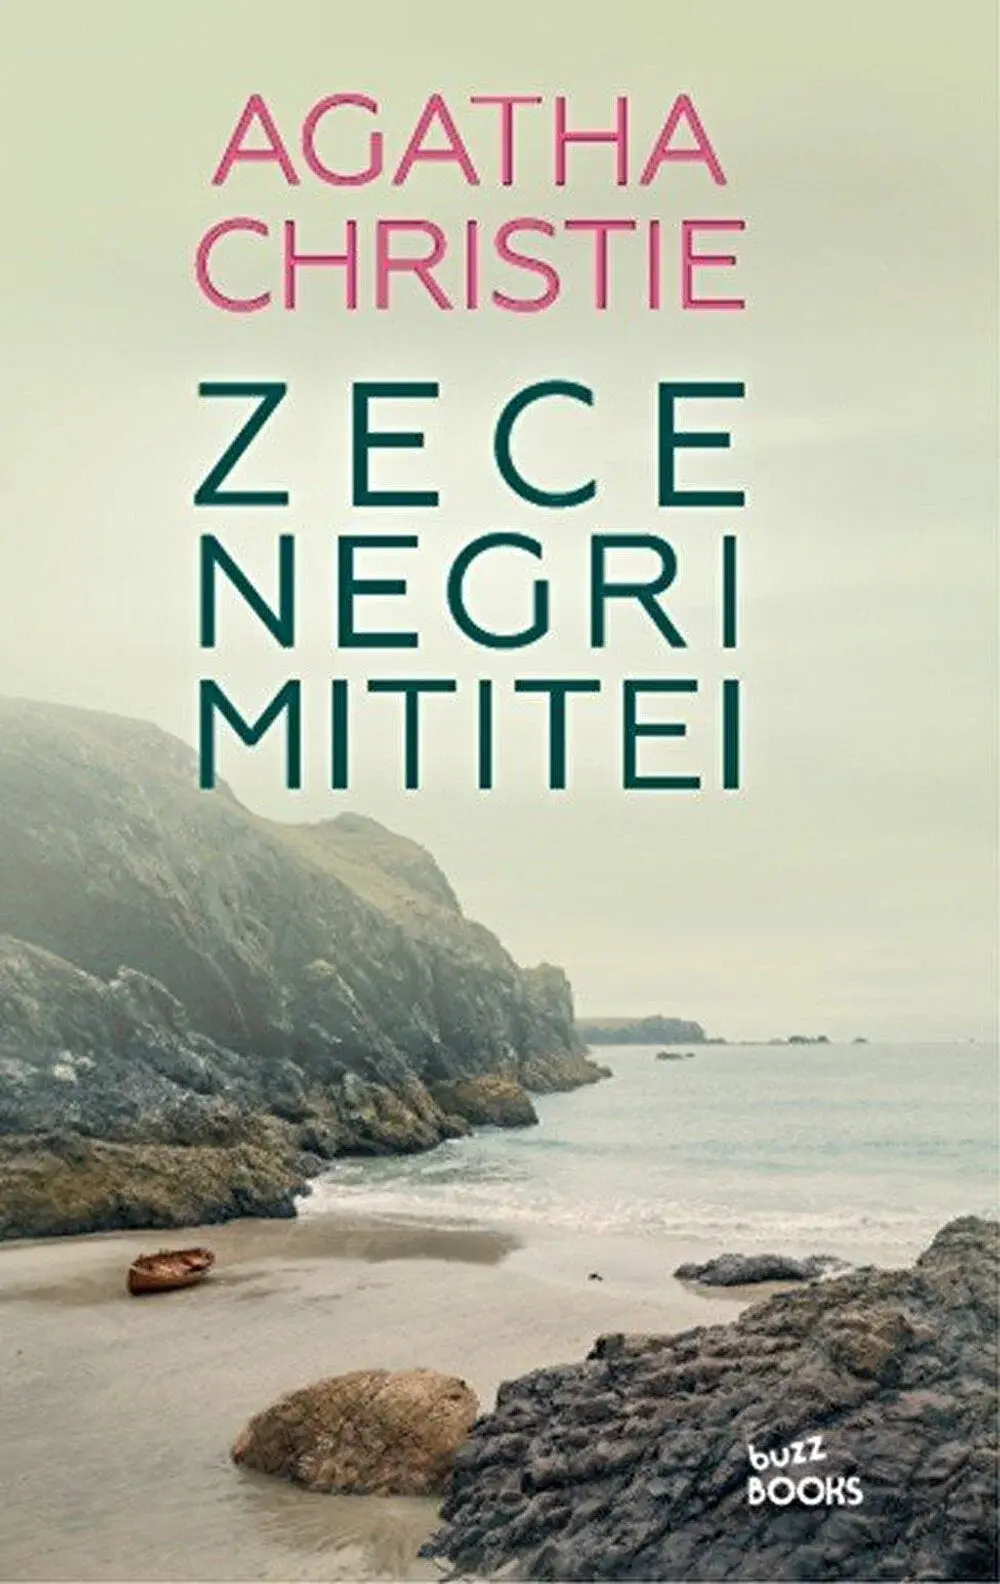 Zece negri mititei – Agatha Christie. Cărți thriller care te vor ține în suspans până la ultima pagină